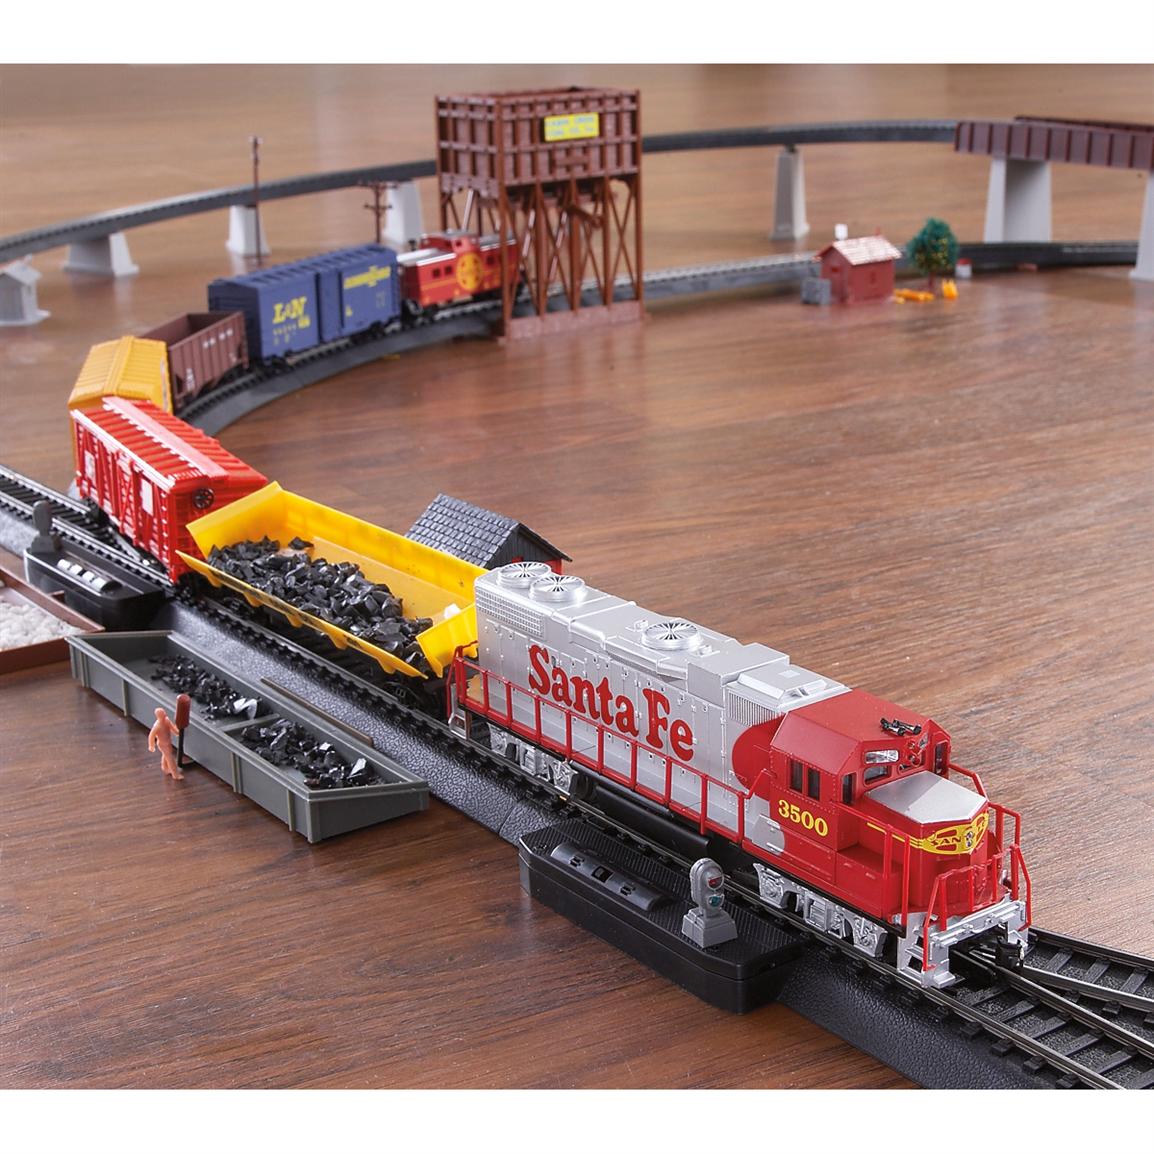 Train+Sets Freightline U.S.A. Ho - Scale Train Set - 394284, Toys